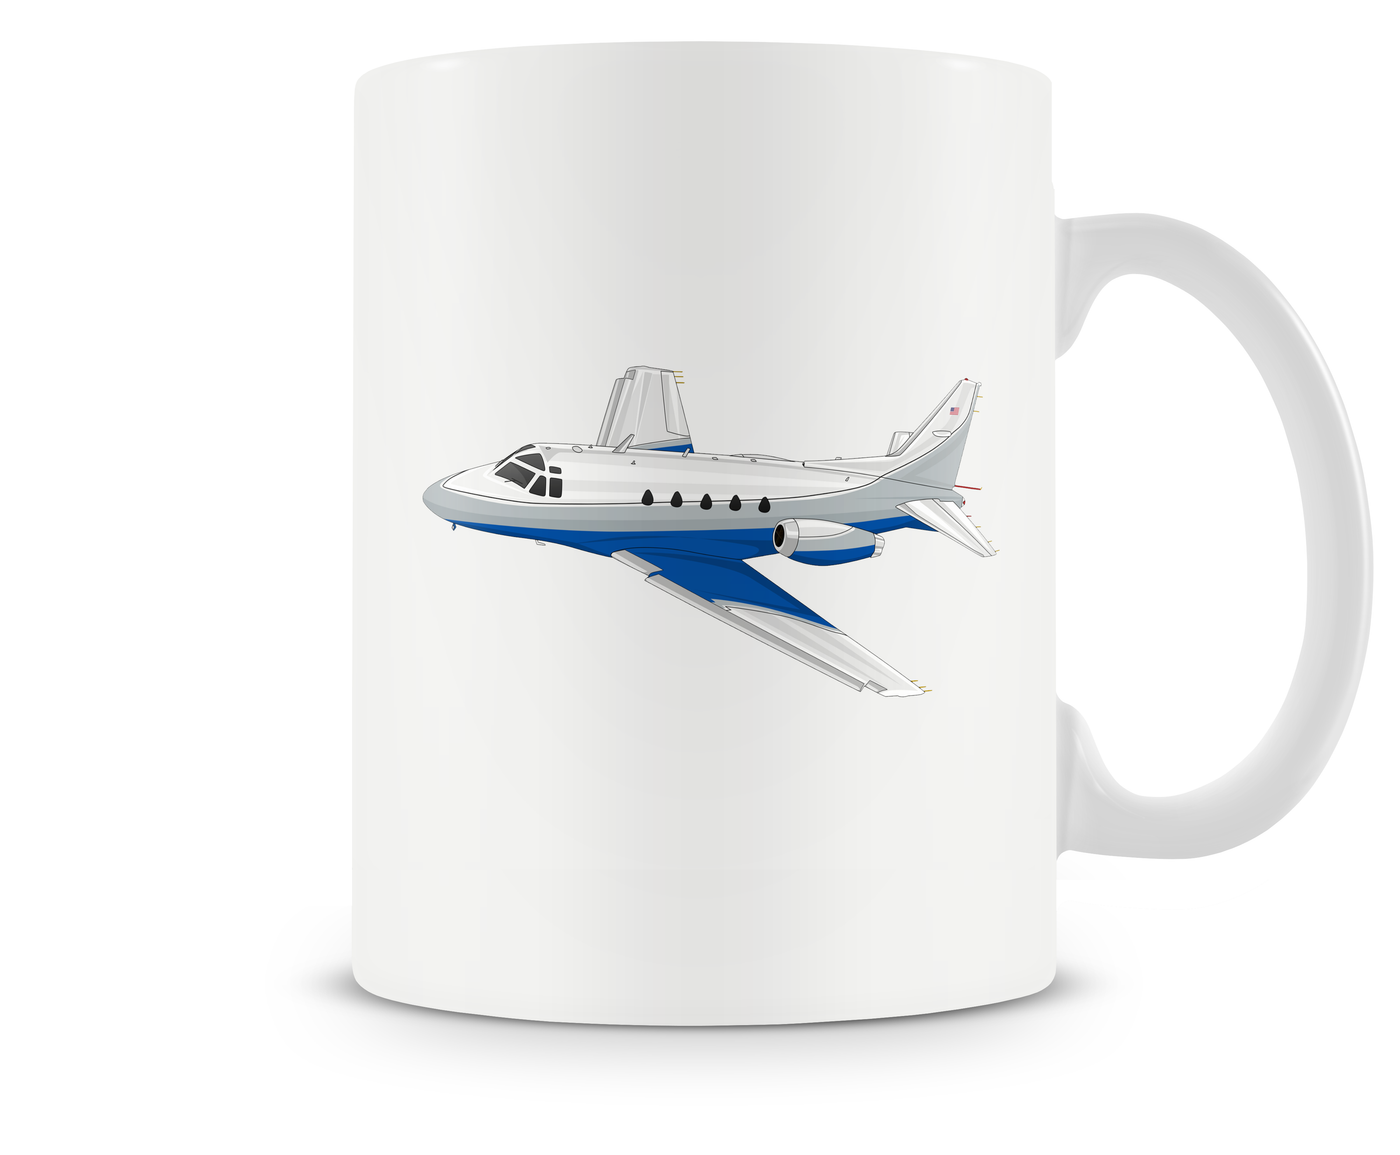 Rockwell Sabreliner 60 Mug - Aircraft Mugs